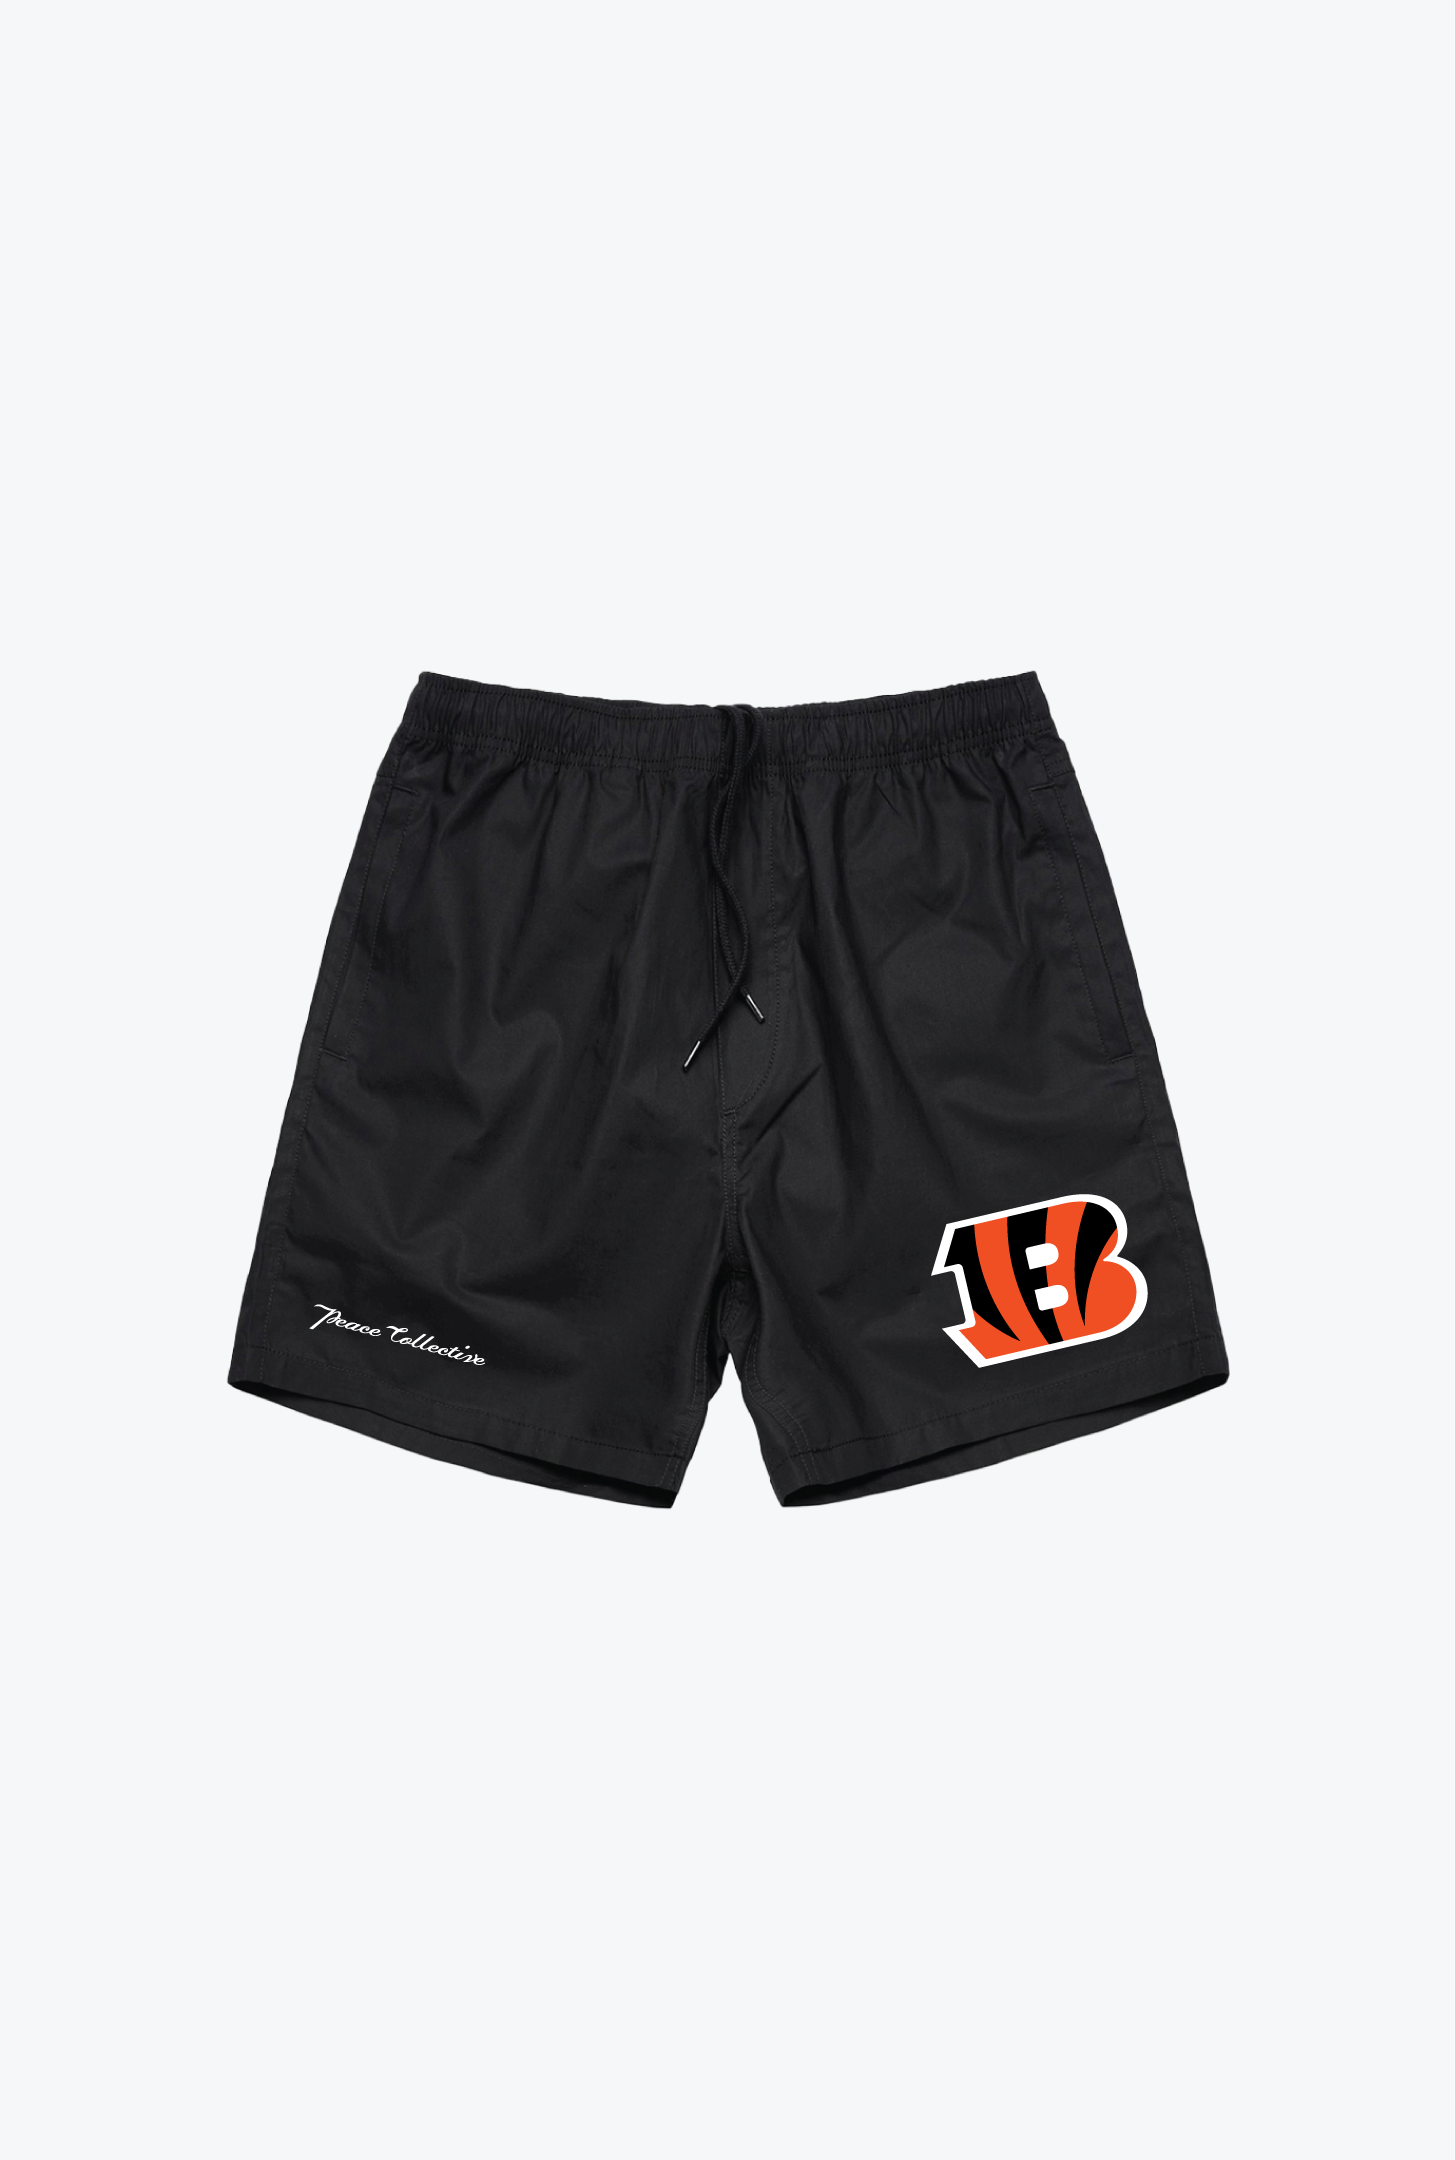 Cincinnati Bengals Board Shorts - Black